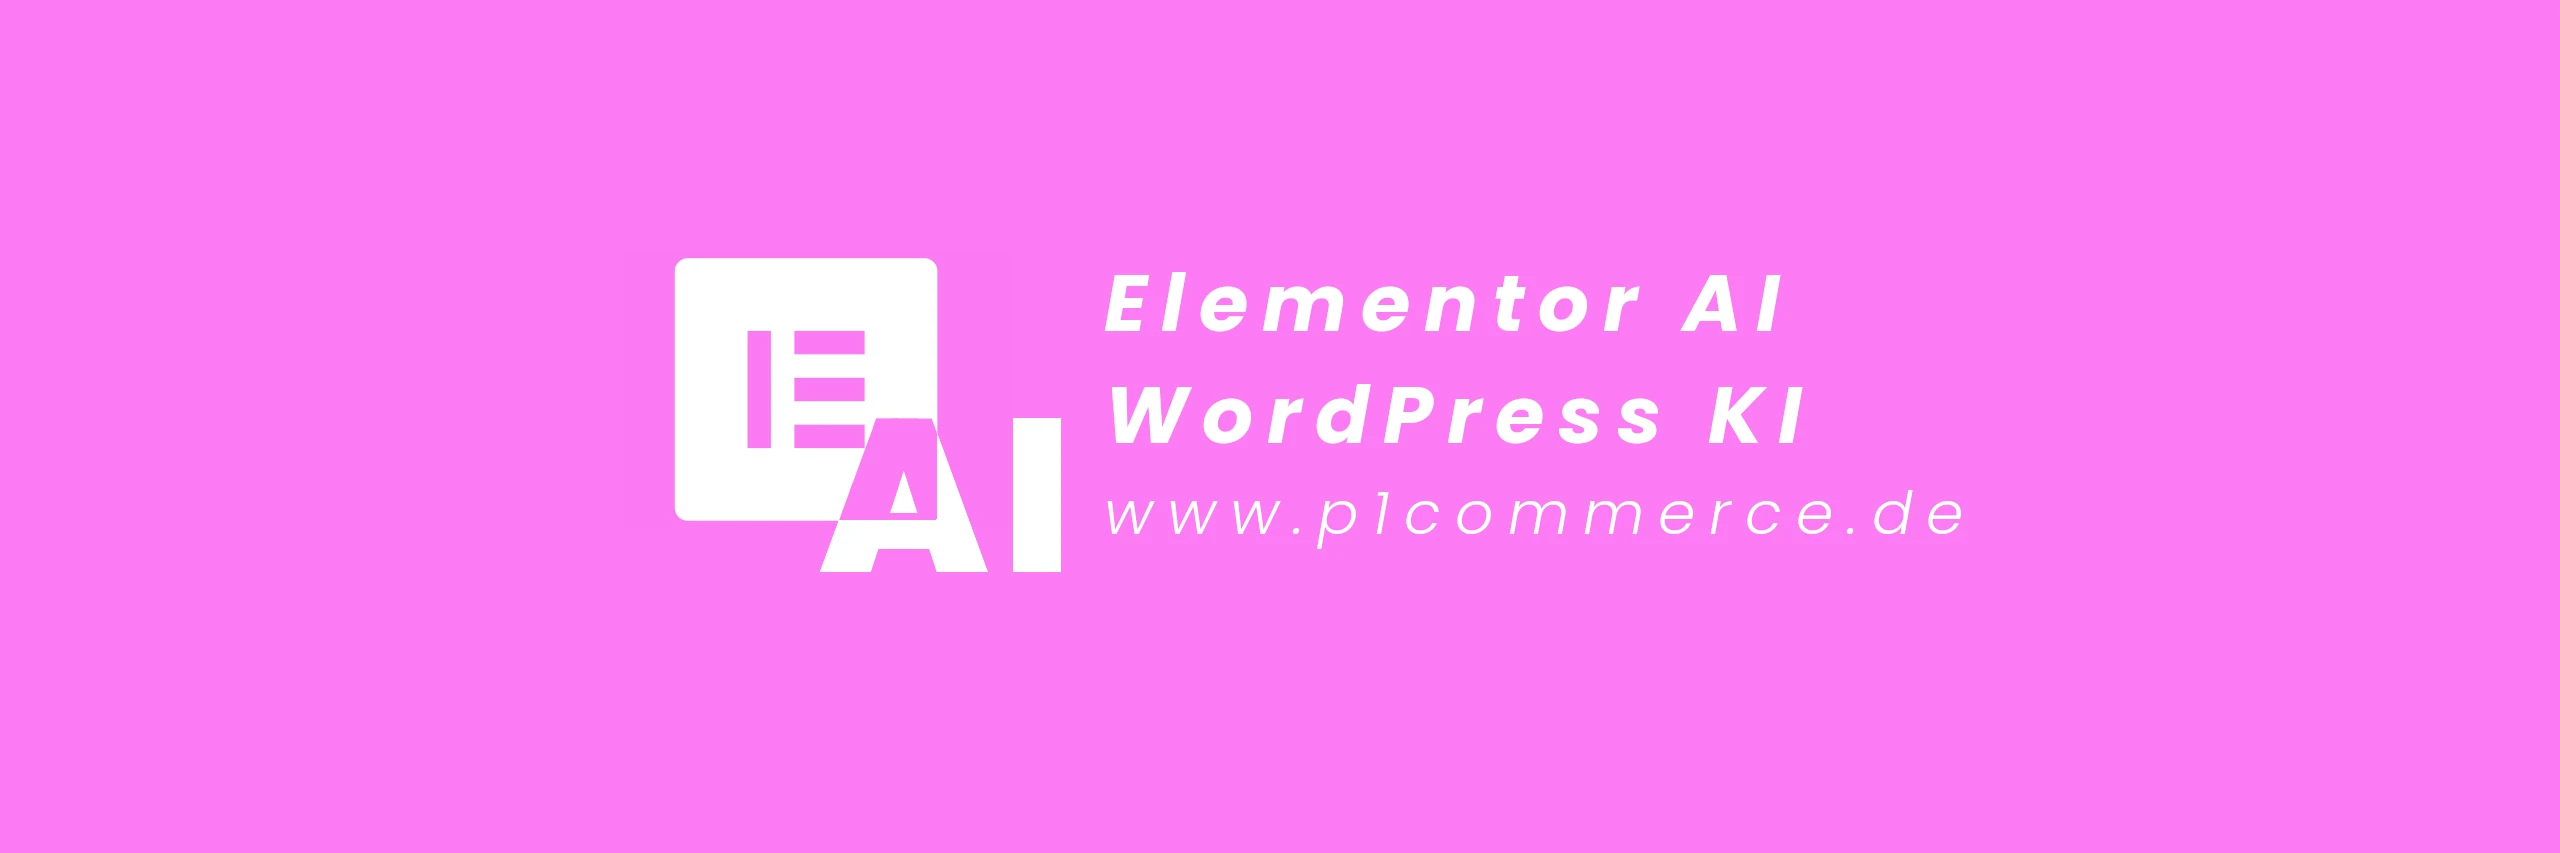 Elementor AI WordPress KI